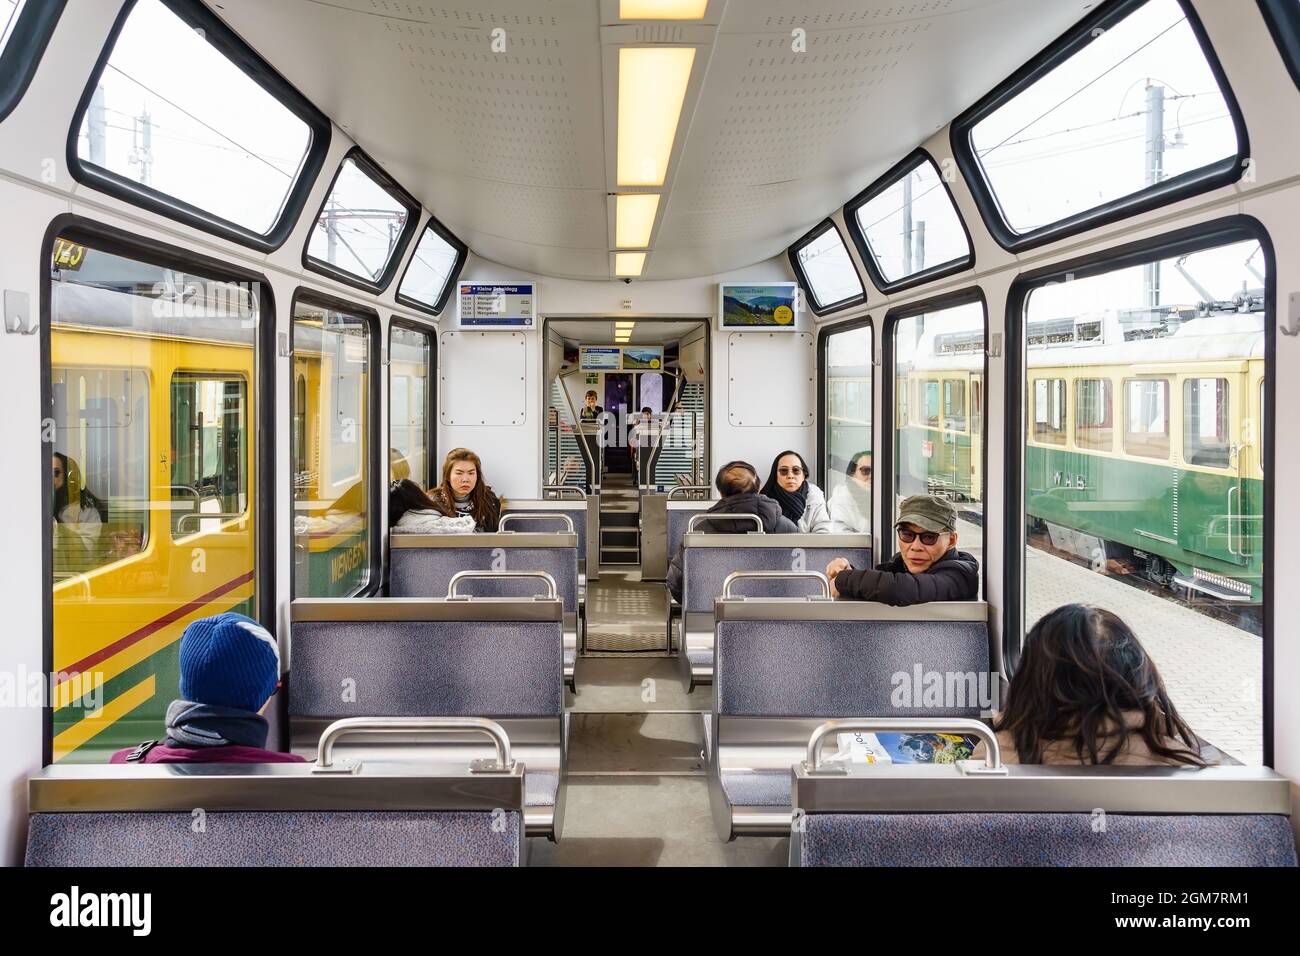 INTERLAKEN, SUISSE - 10 AVRIL 2018 : le train romantique est l'intérieur du train pour aller à Jungfraujoch, Interlaken, Suisse. Banque D'Images